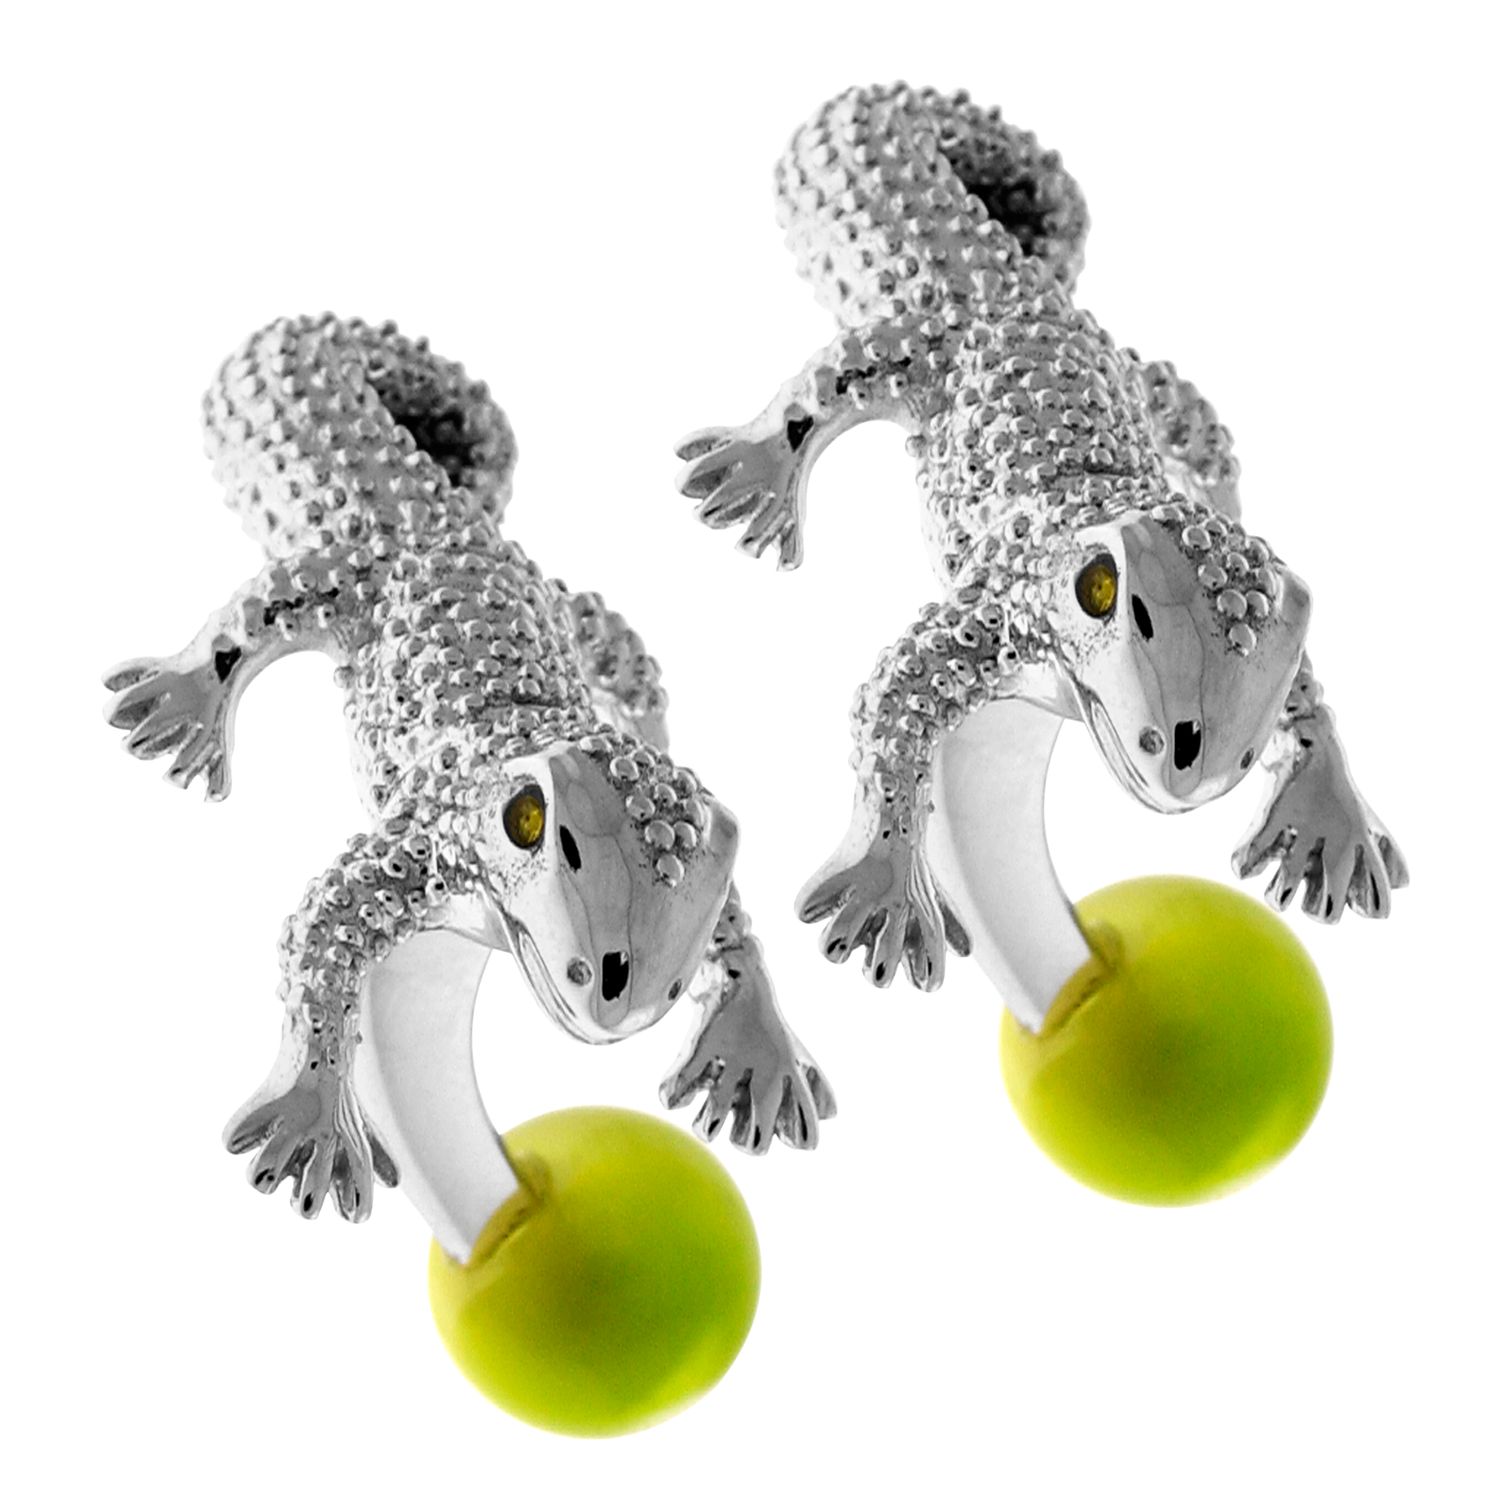 Tateossian Gecko Cufflinks, Silver